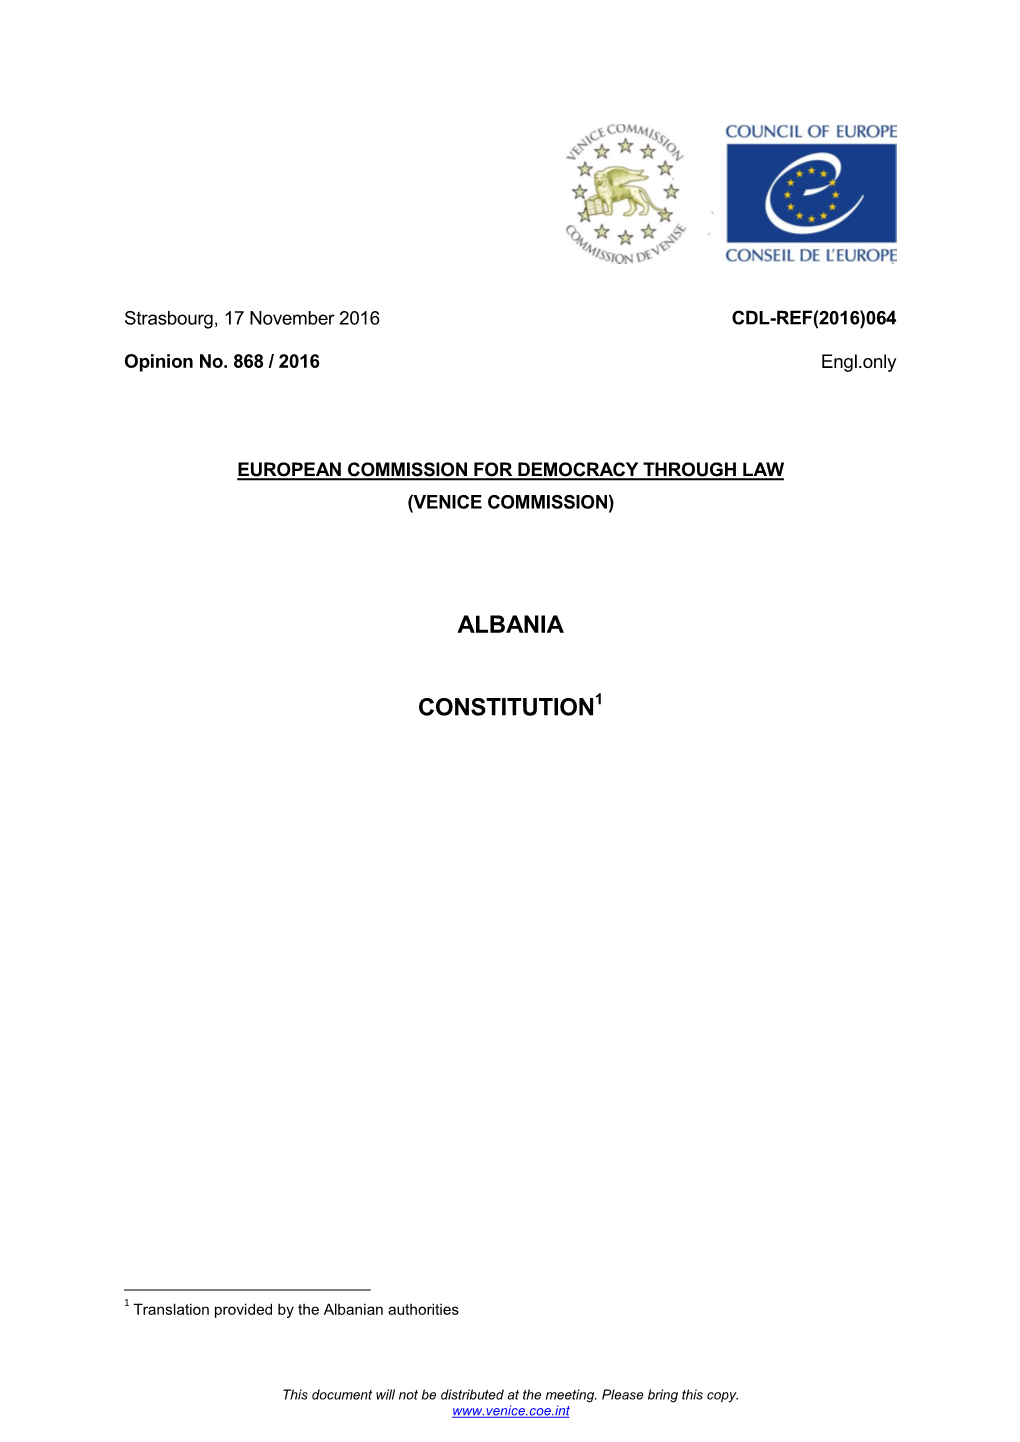 Albania Constitution